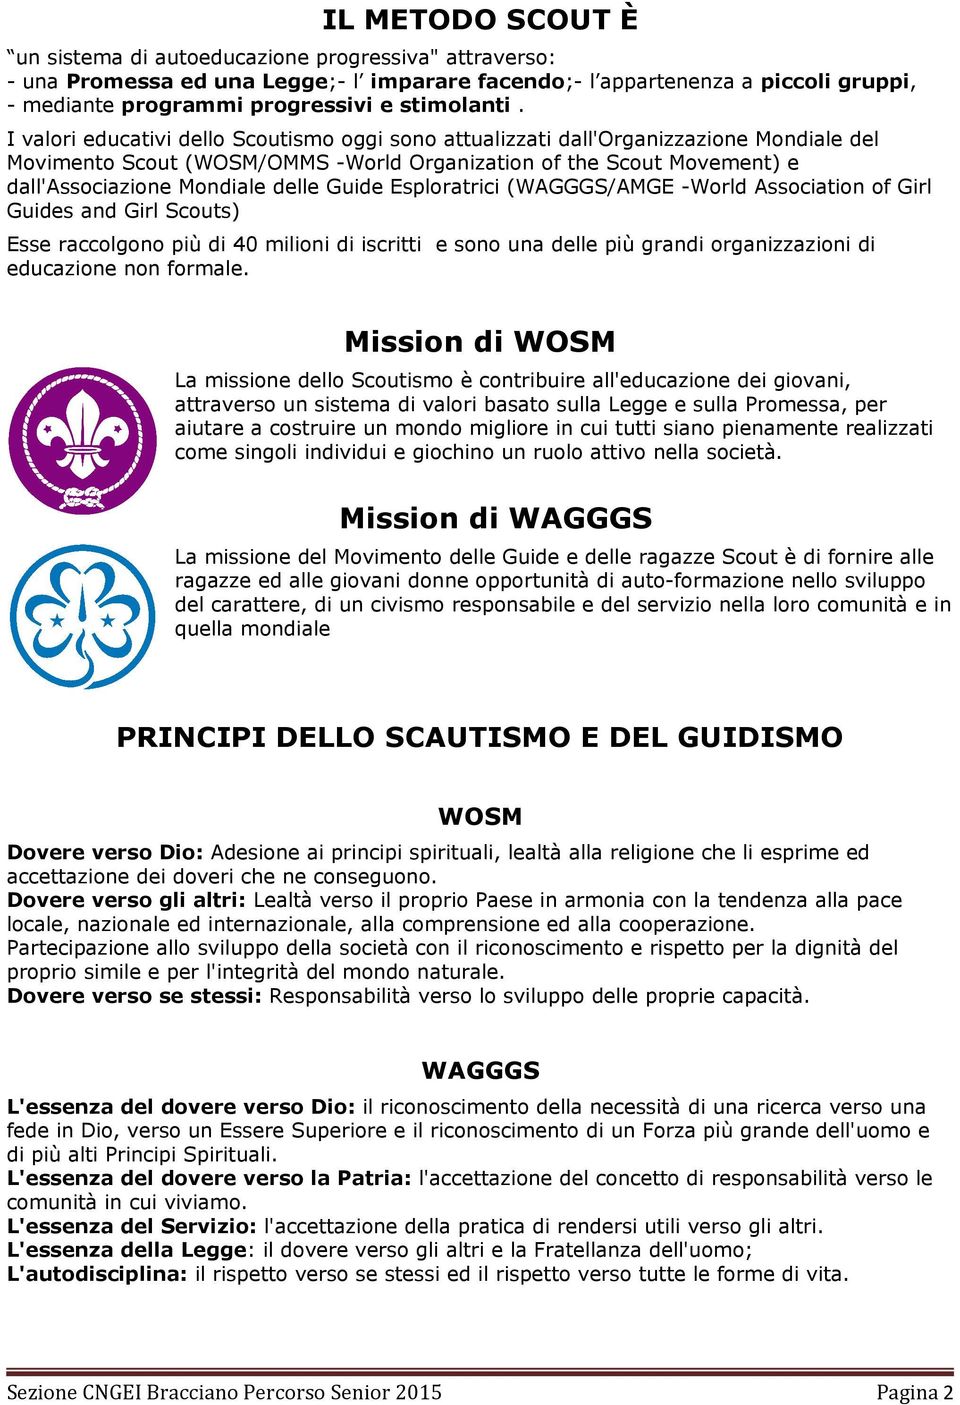 I valori educativi dello Scoutismo oggi sono attualizzati dall'organizzazione Mondiale del Movimento Scout (WOSM/OMMS -World Organization of the Scout Movement) e dall'associazione Mondiale delle